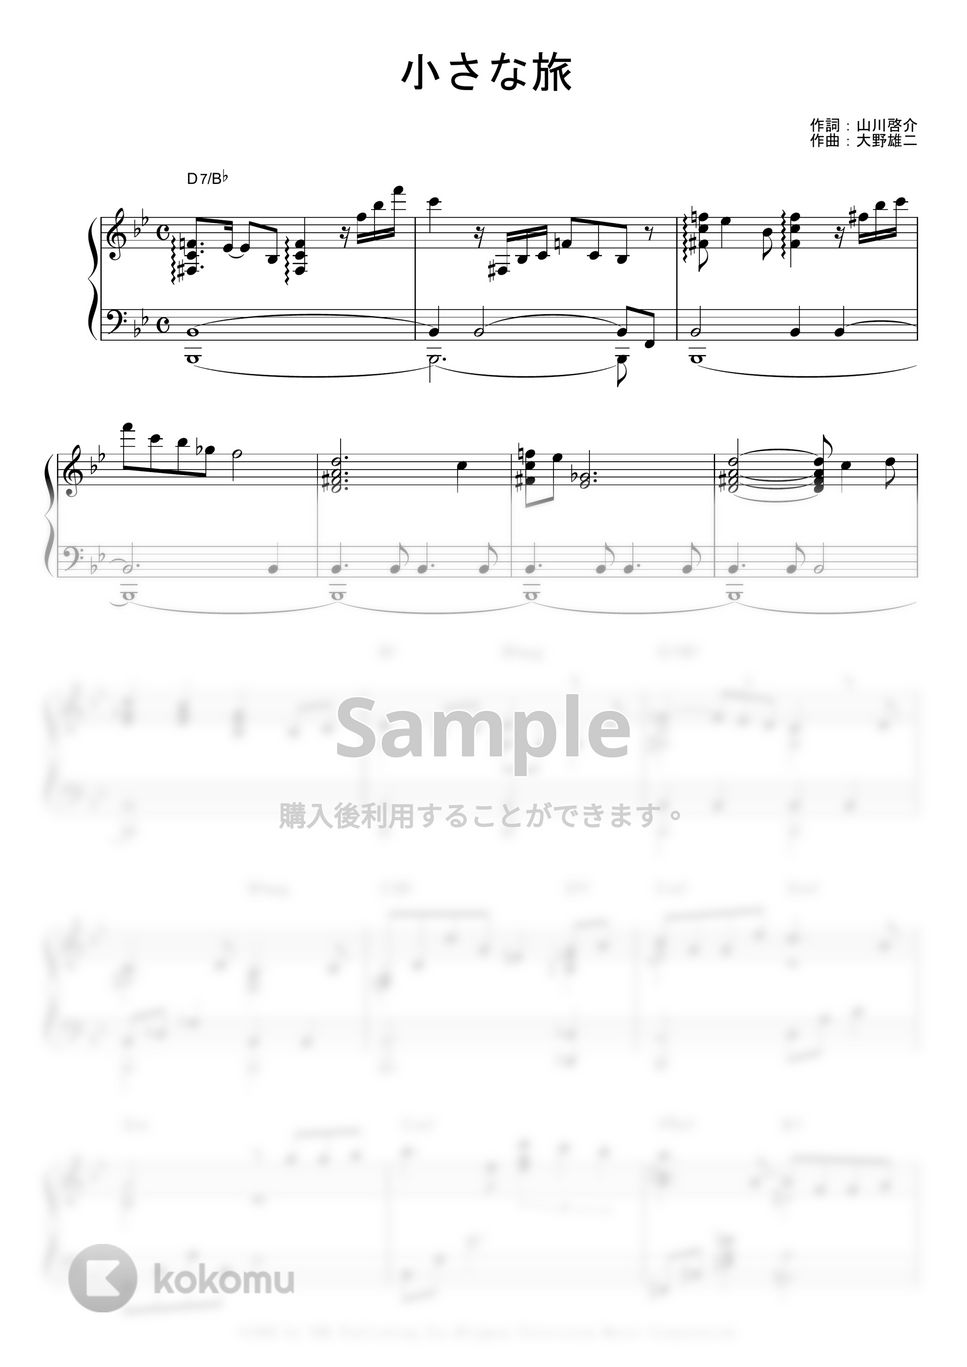 大野雄二 - 小さな旅 (Jazz ver.) by piano*score